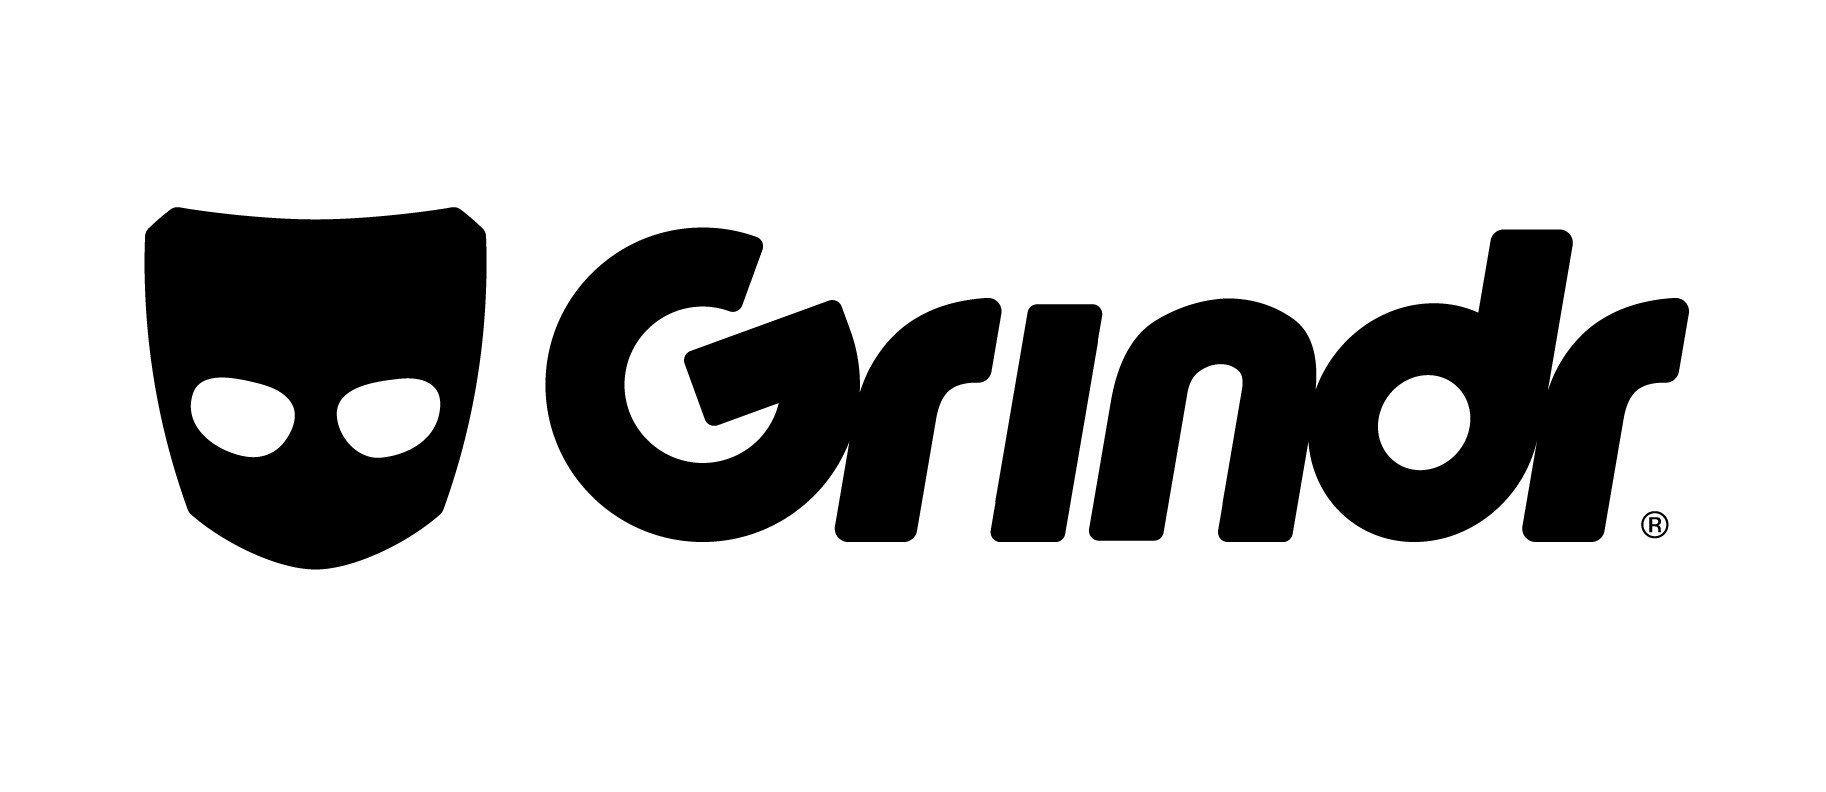 Gindr Logo - Grindr logo